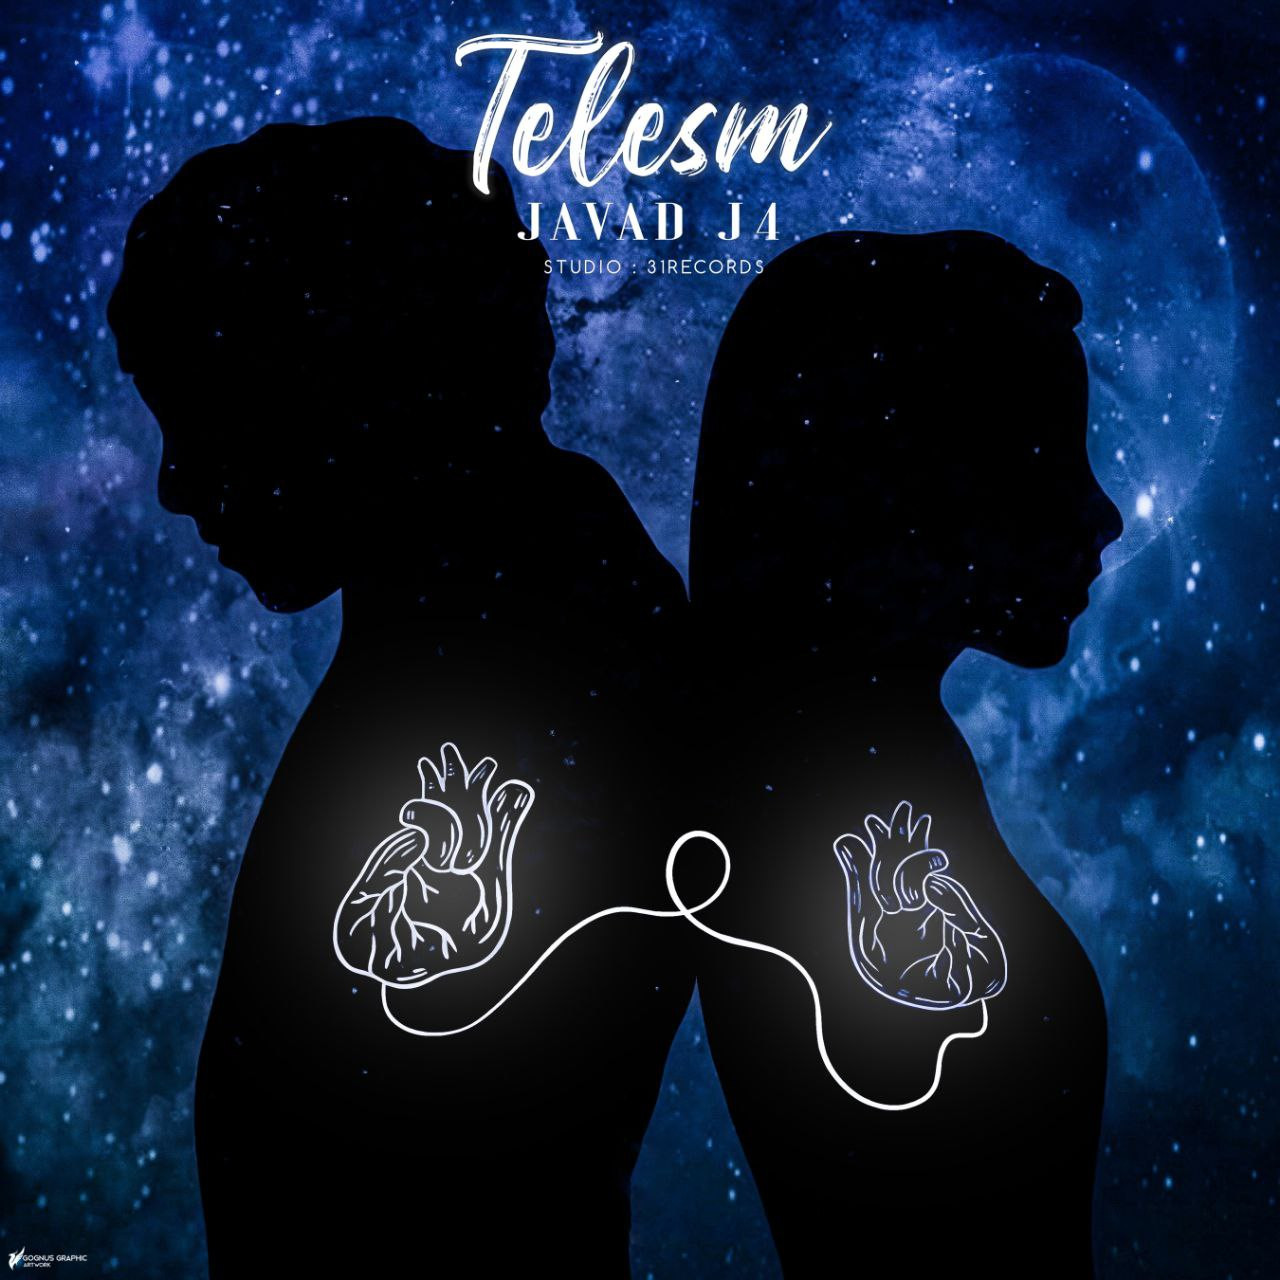 Javad J4 - Telesm